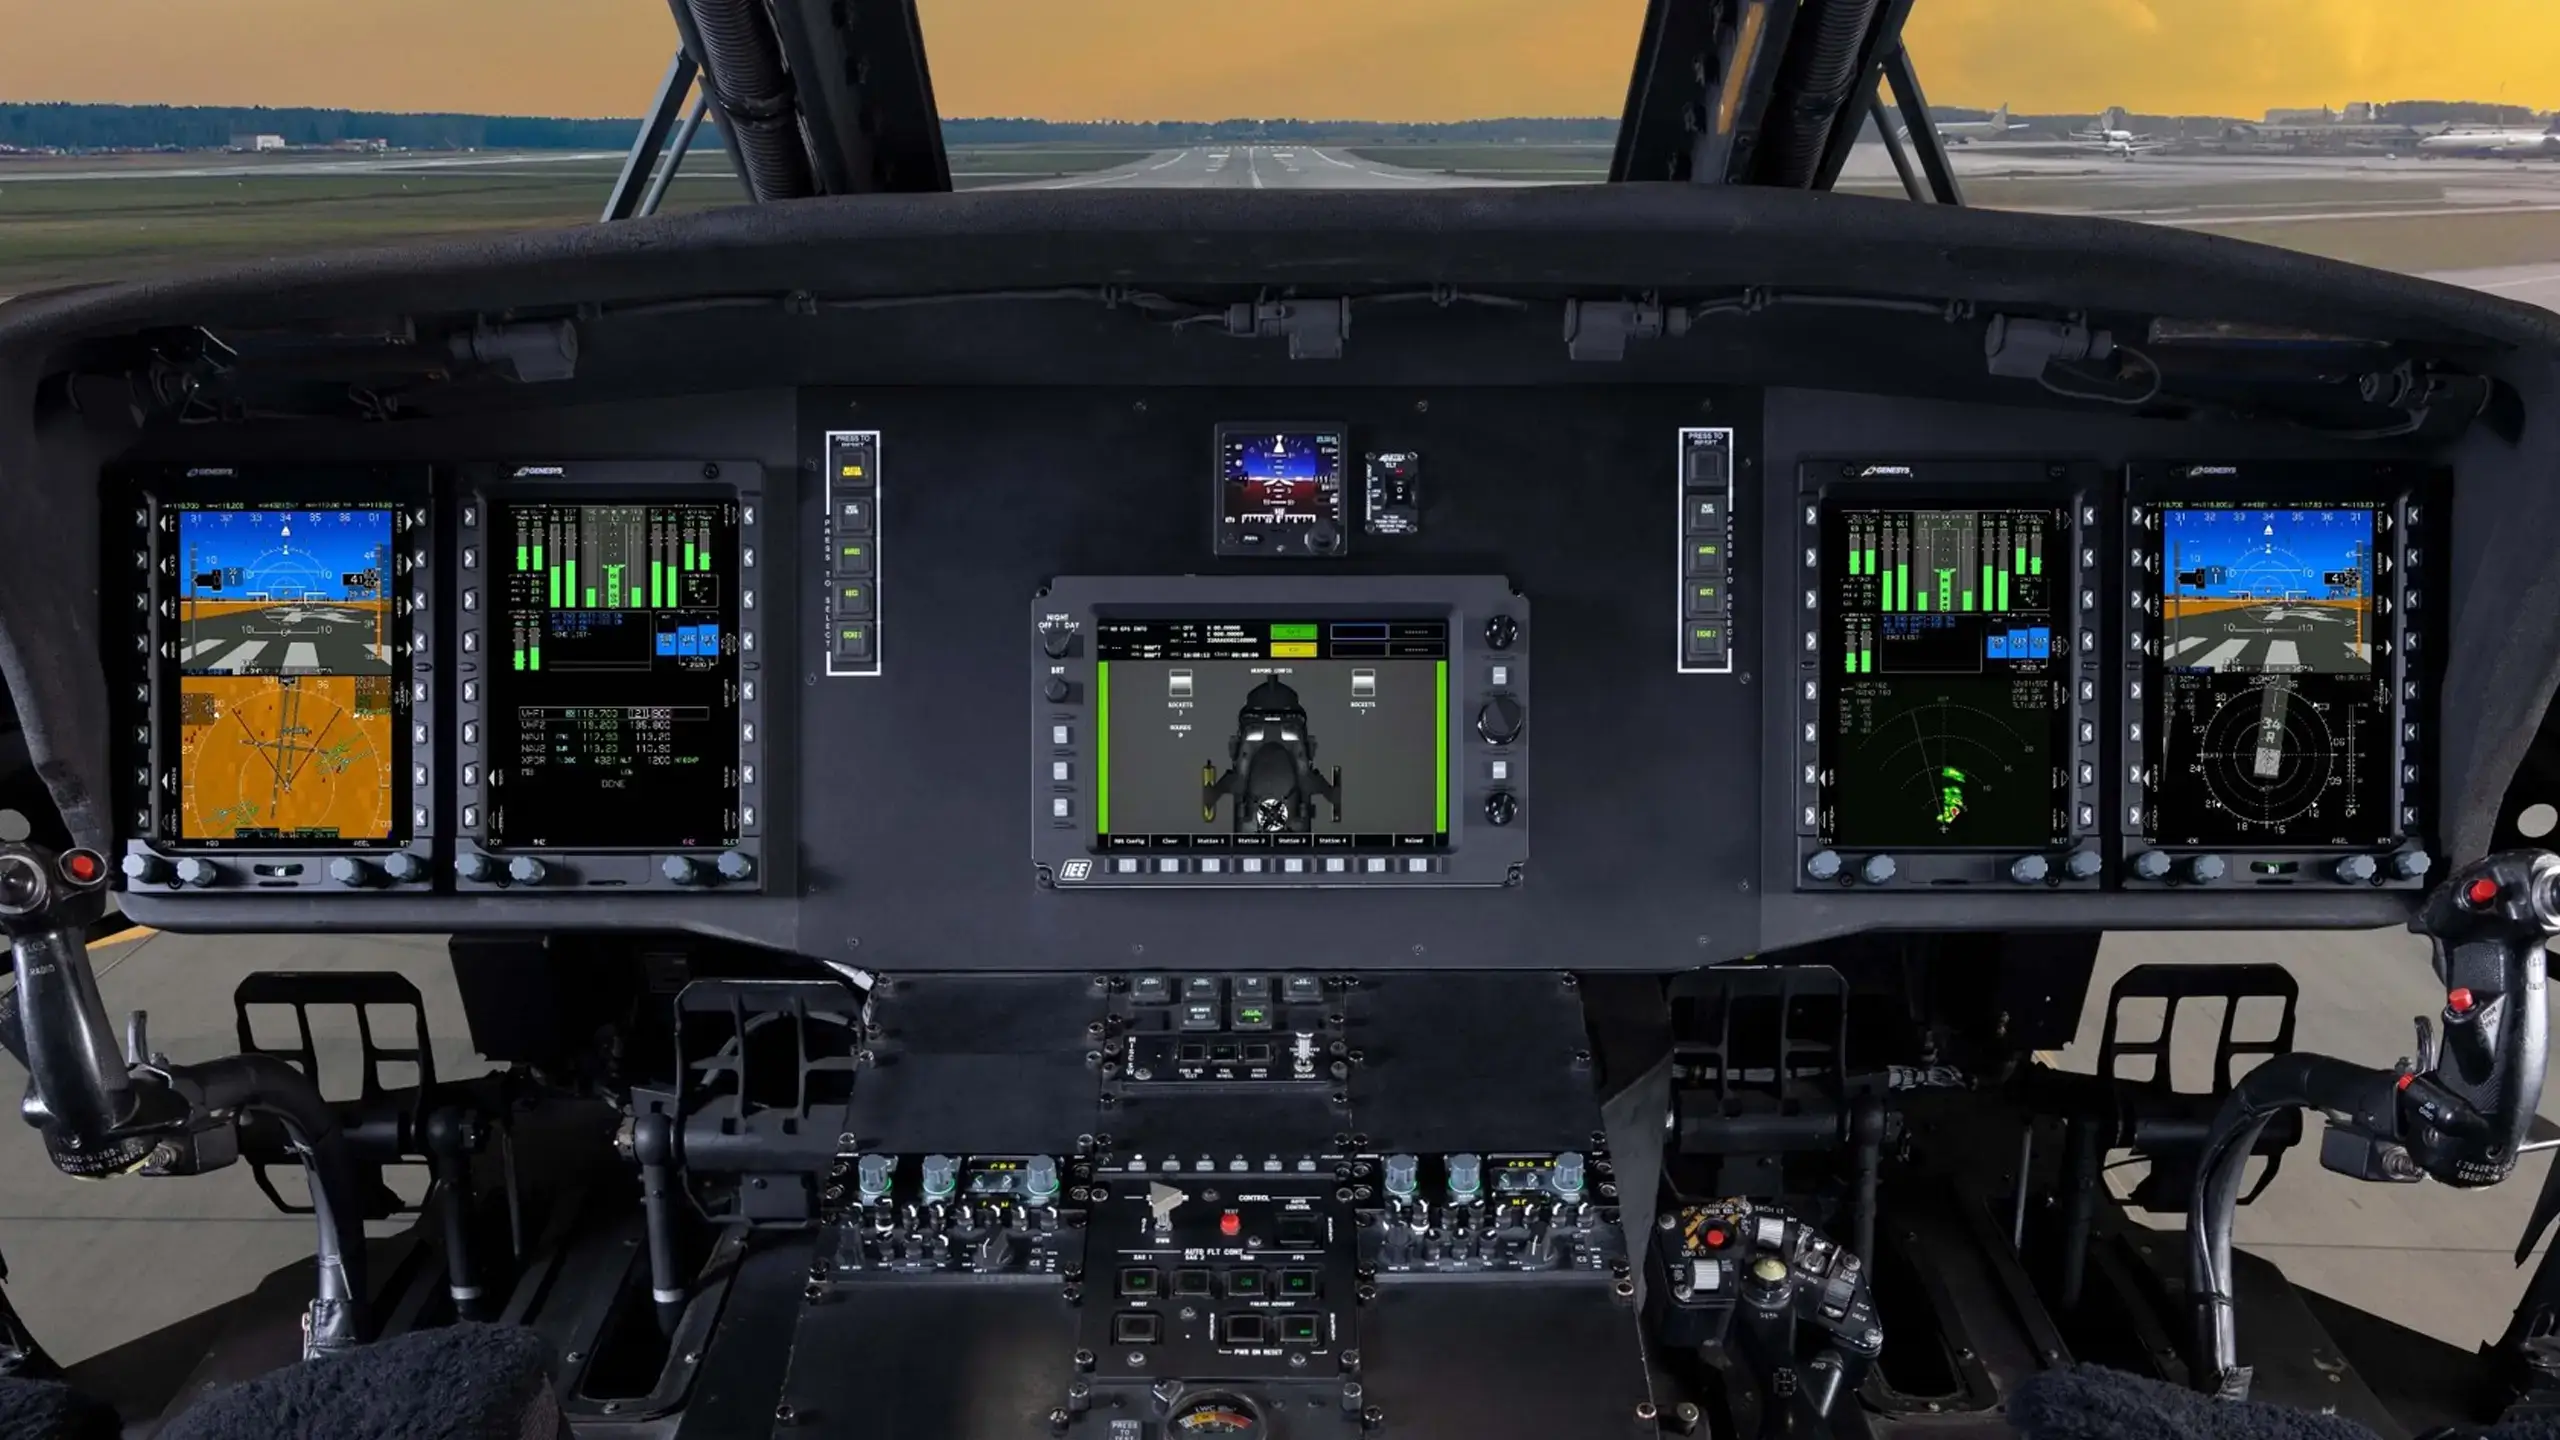 image of the Sikorsky UH-60 Black Hawk cockpit